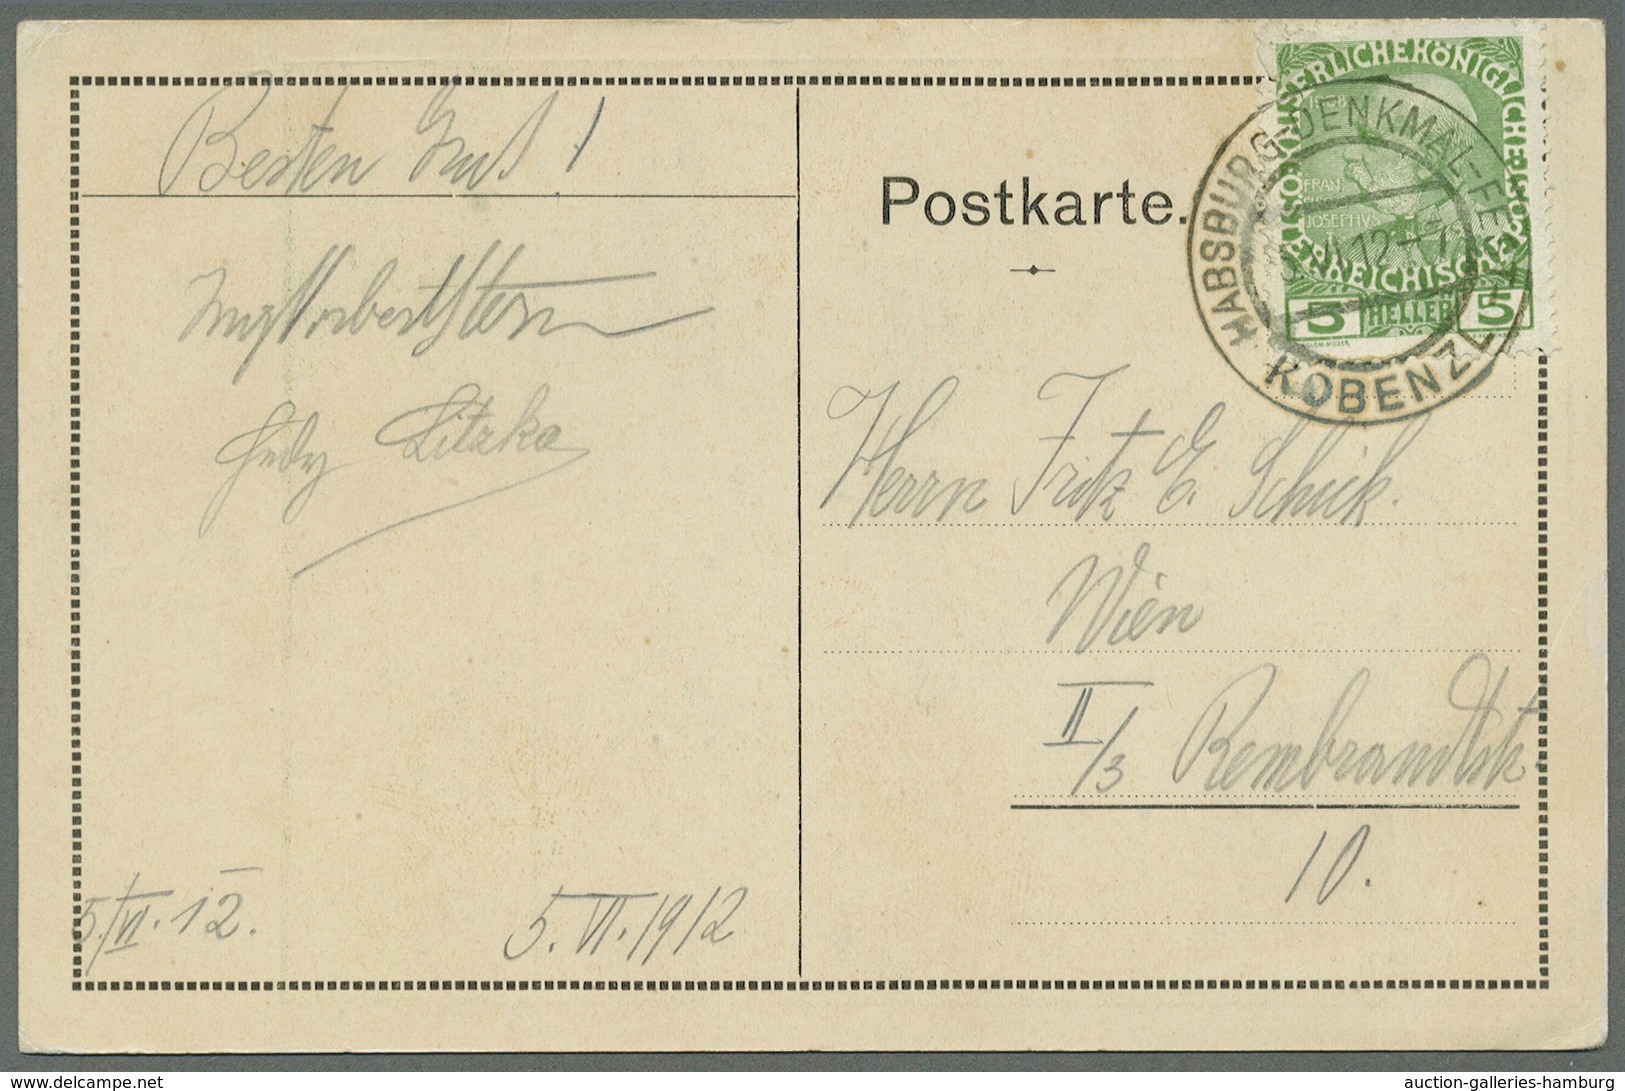 Österreich - Sonderstempel: 1912 (5.6.), Postkarte Des Veranstaltungs-Komitees Zum Sommerfest Am Kob - Maschinenstempel (EMA)